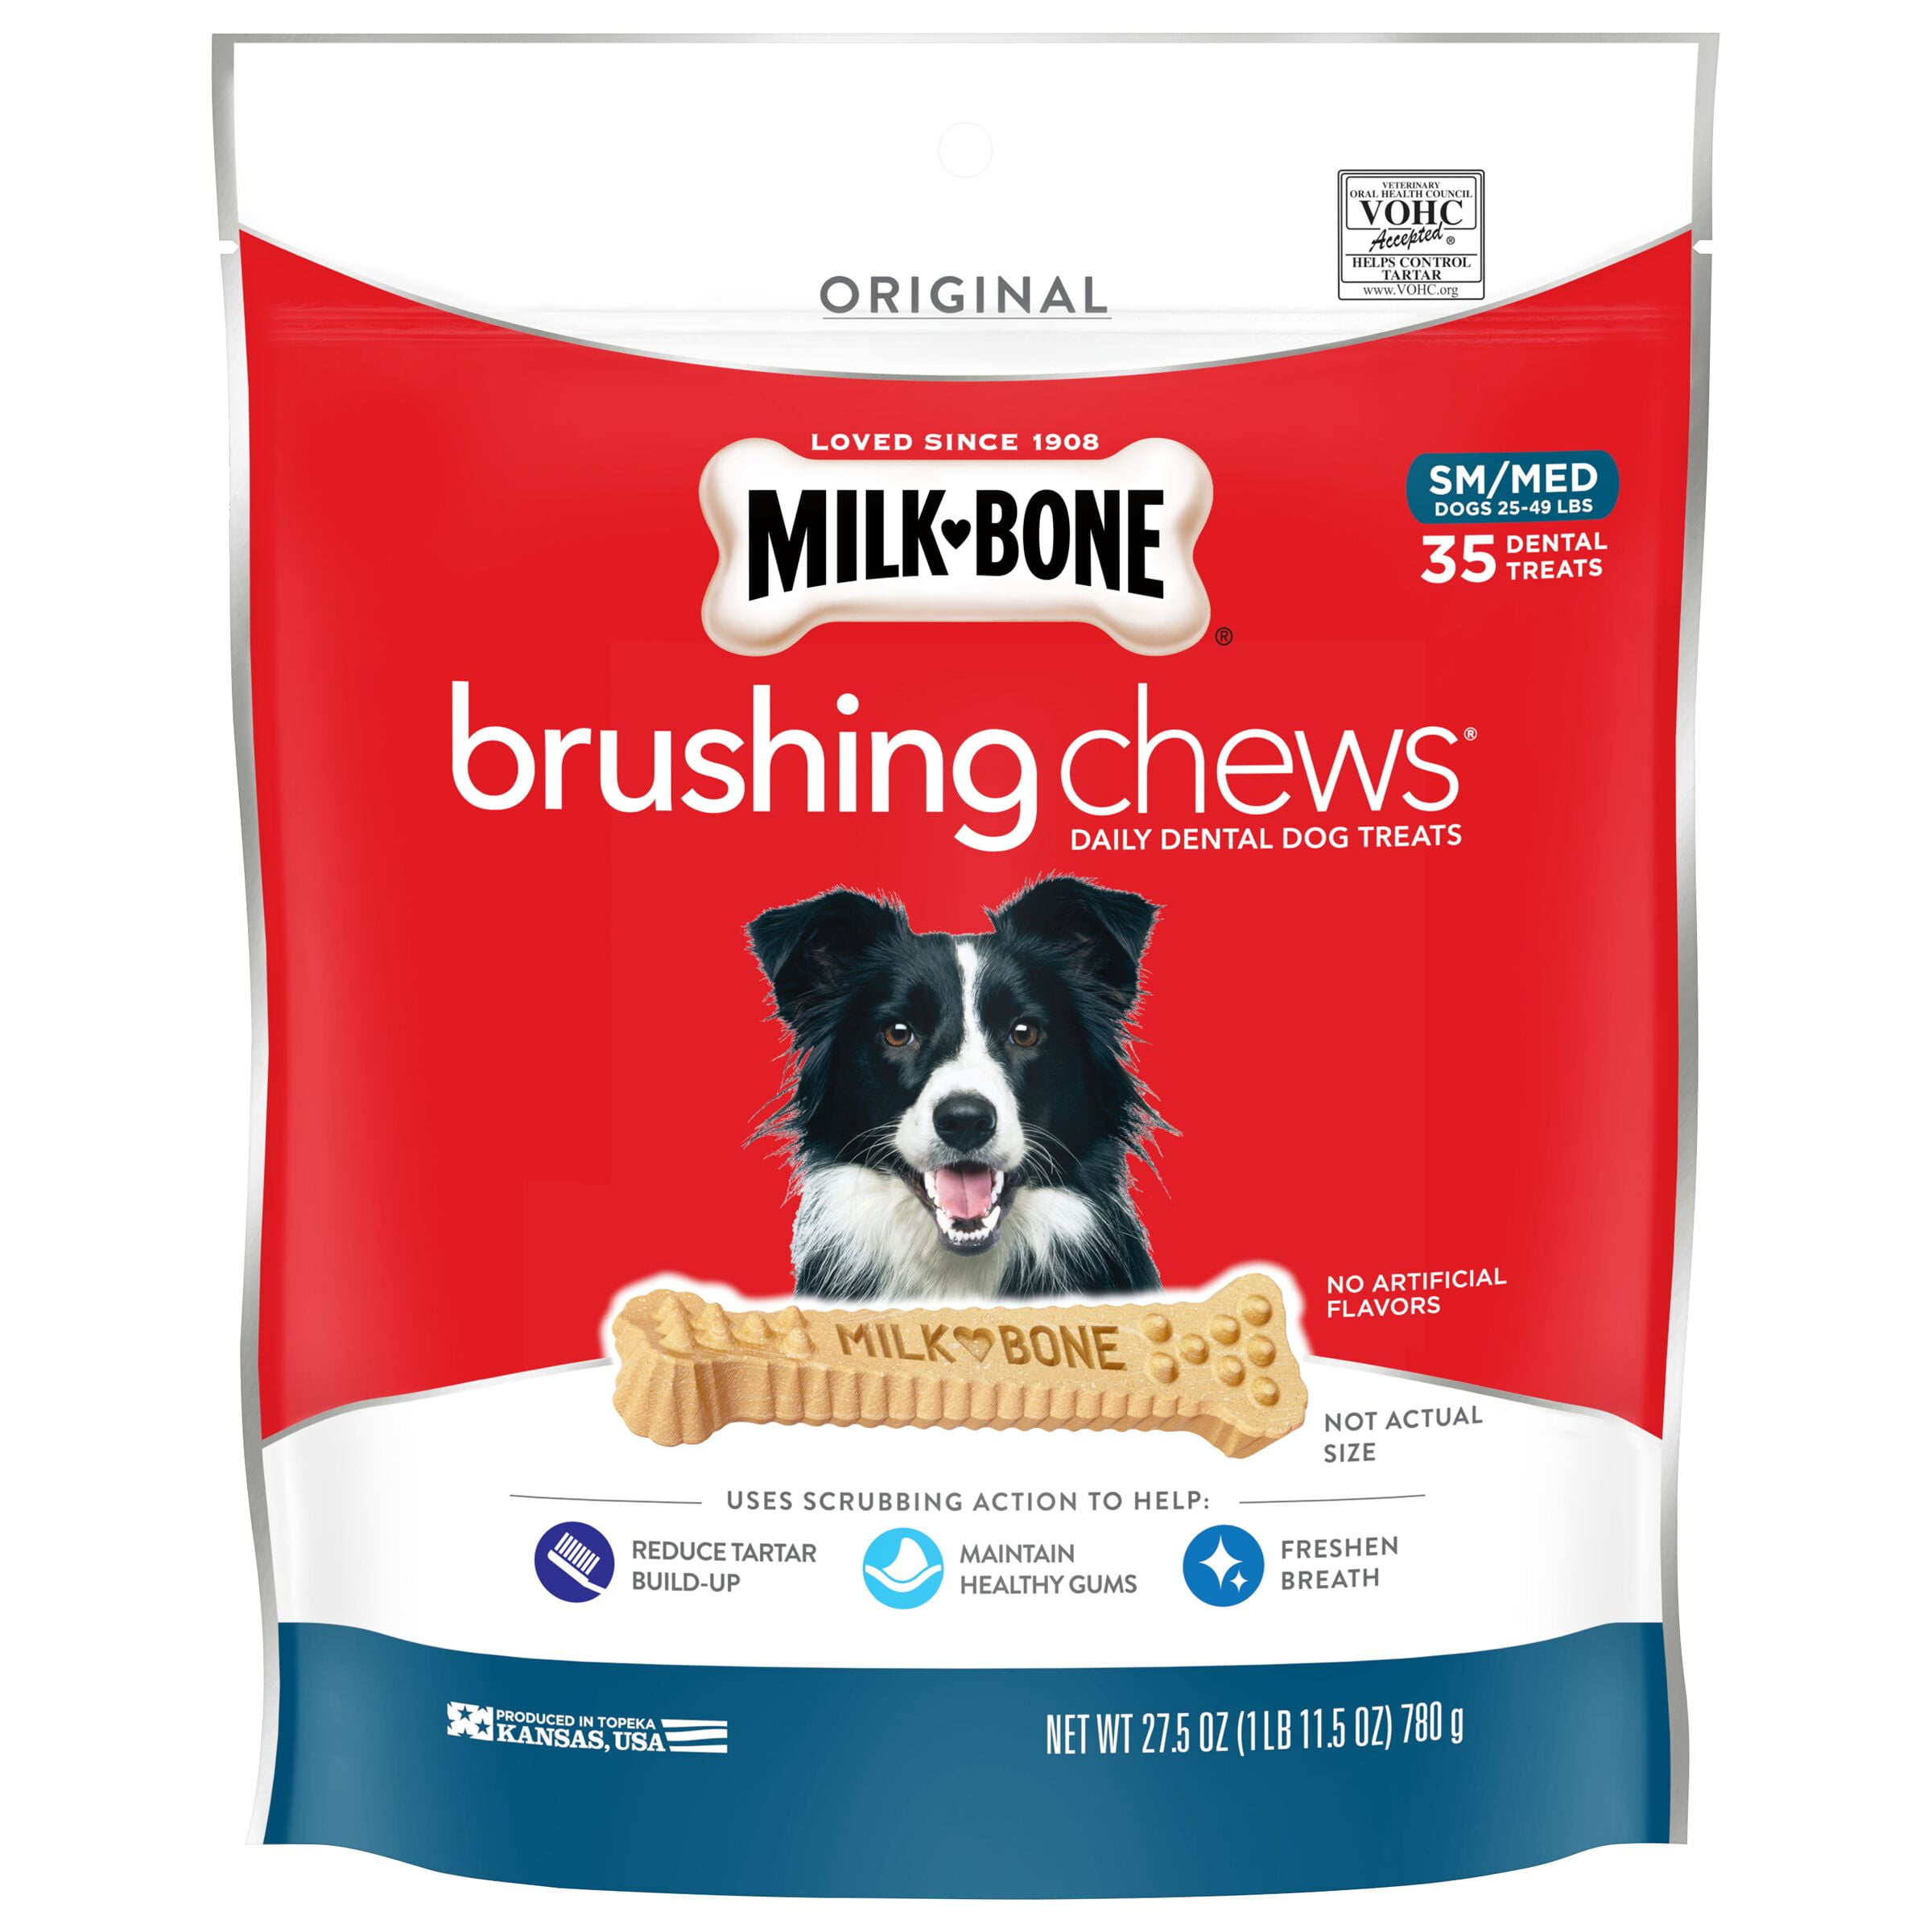 Milk-Bone Brushing Chews Daily Dental Dog Treats, Small-Medium, 27.5 oz., 35 Bones Per Bag